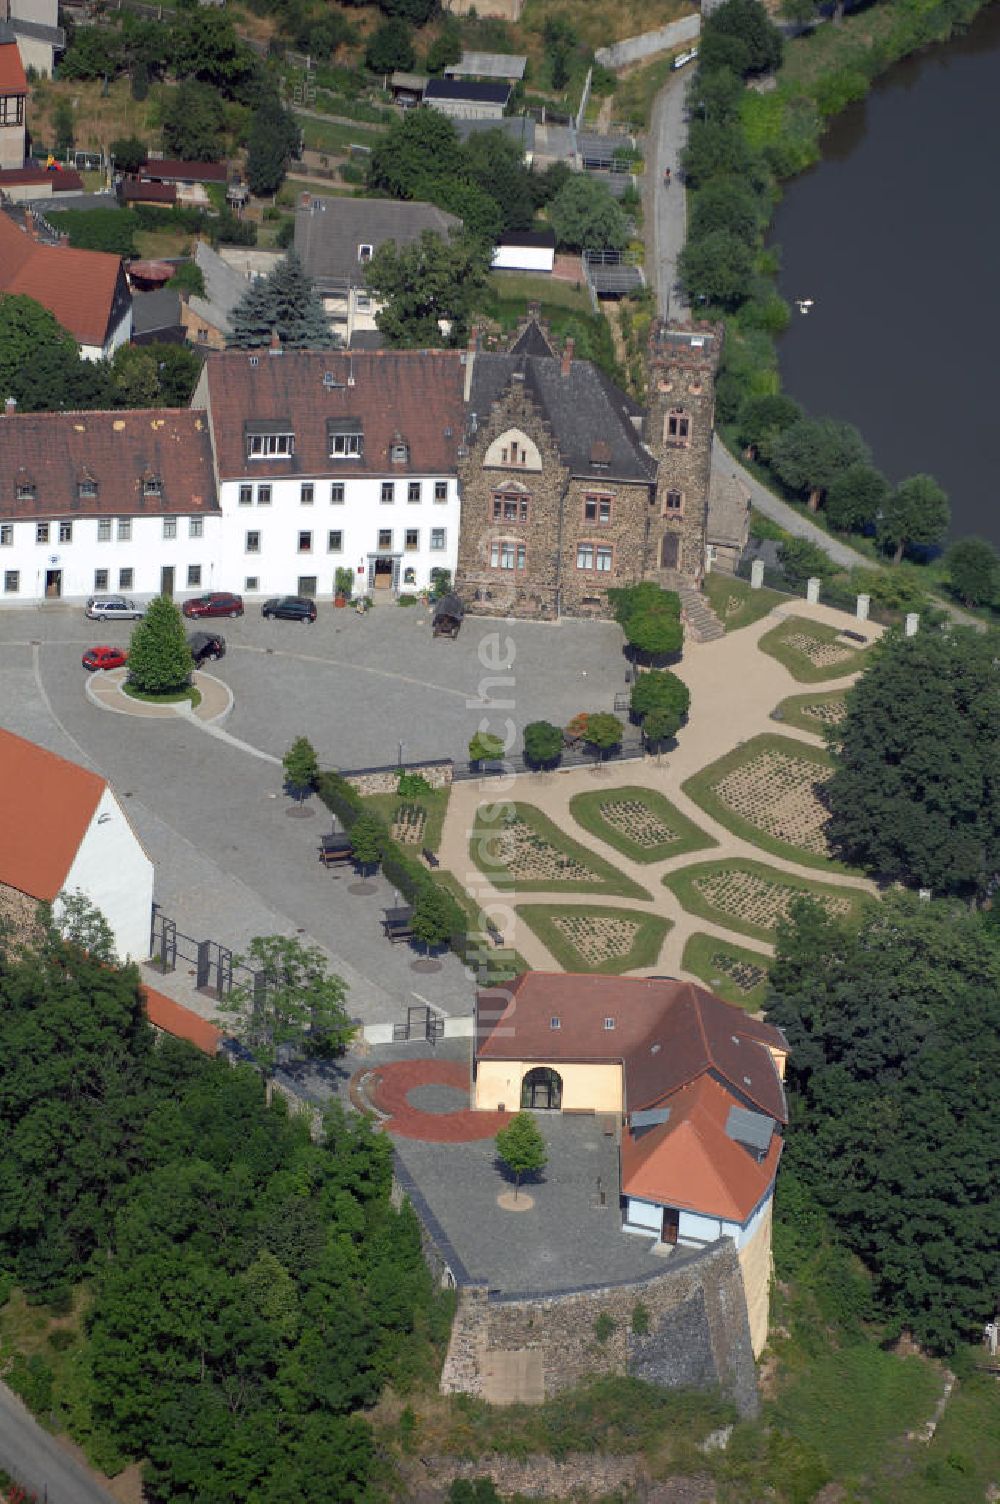 Ronneburg von oben - Blick auf das Schloss in Ronneburg